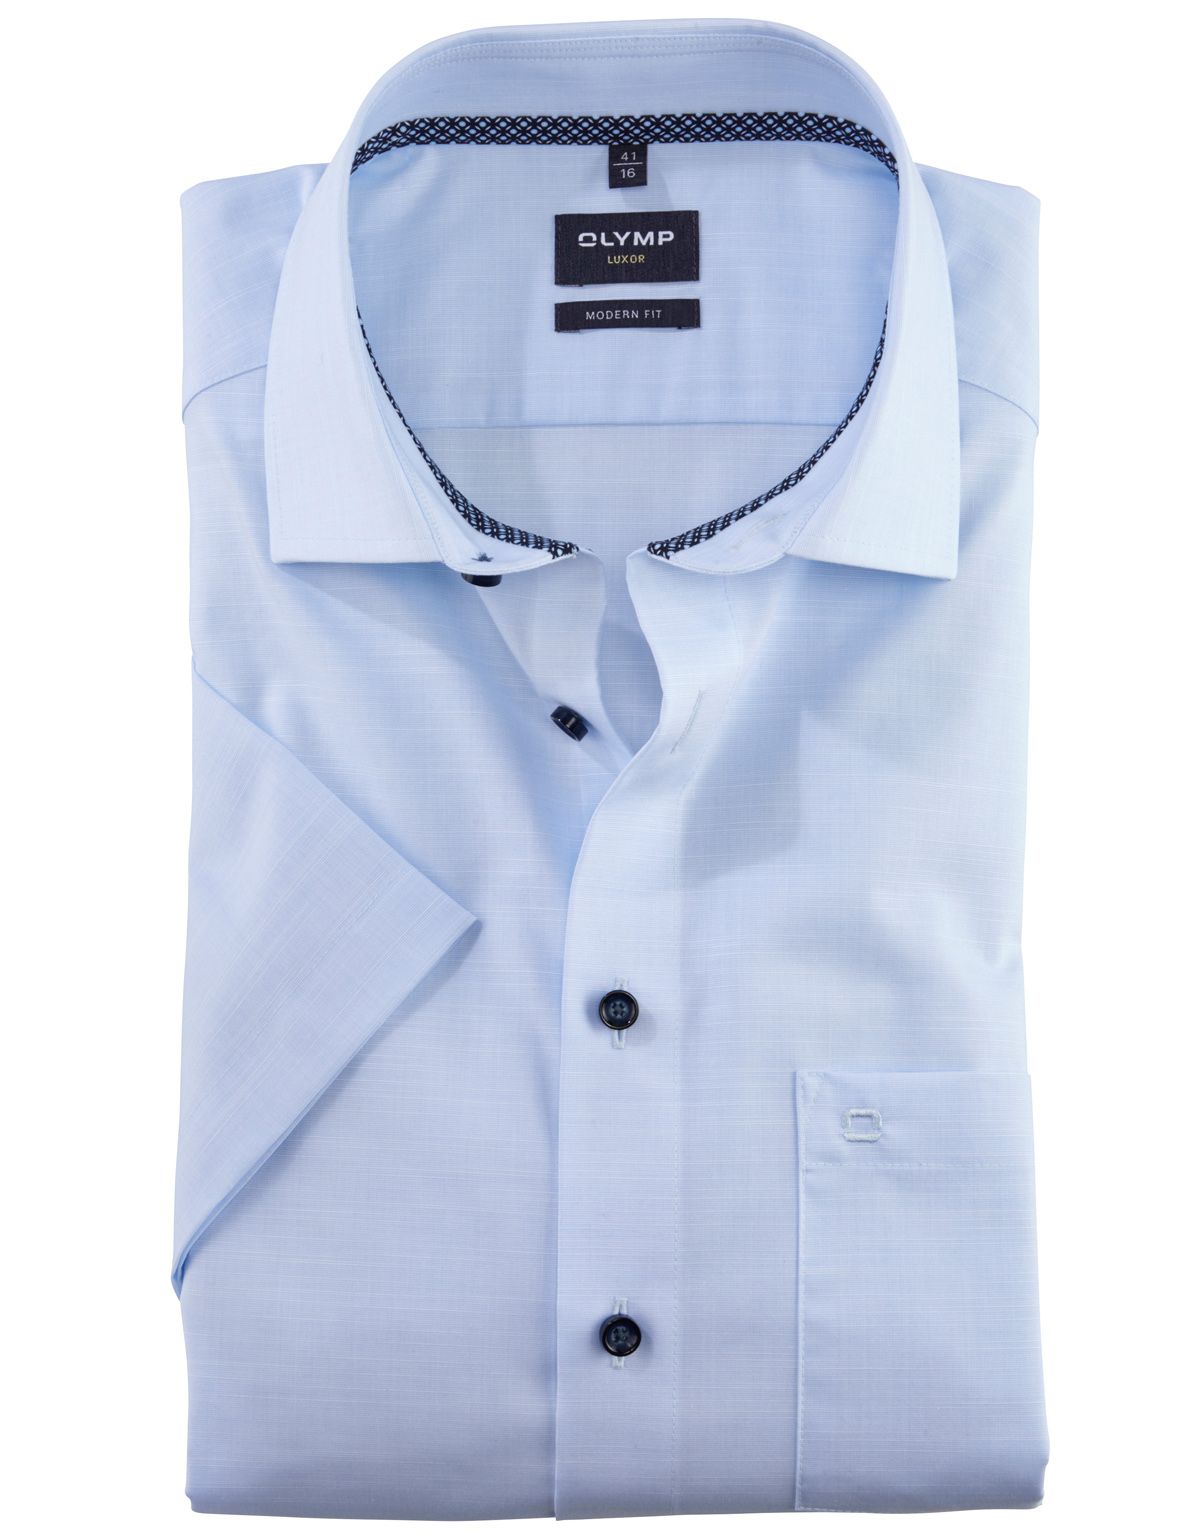 Рубашка классическая мужская OLYMP Luxor, modern fit[ГОЛУБОЙ]